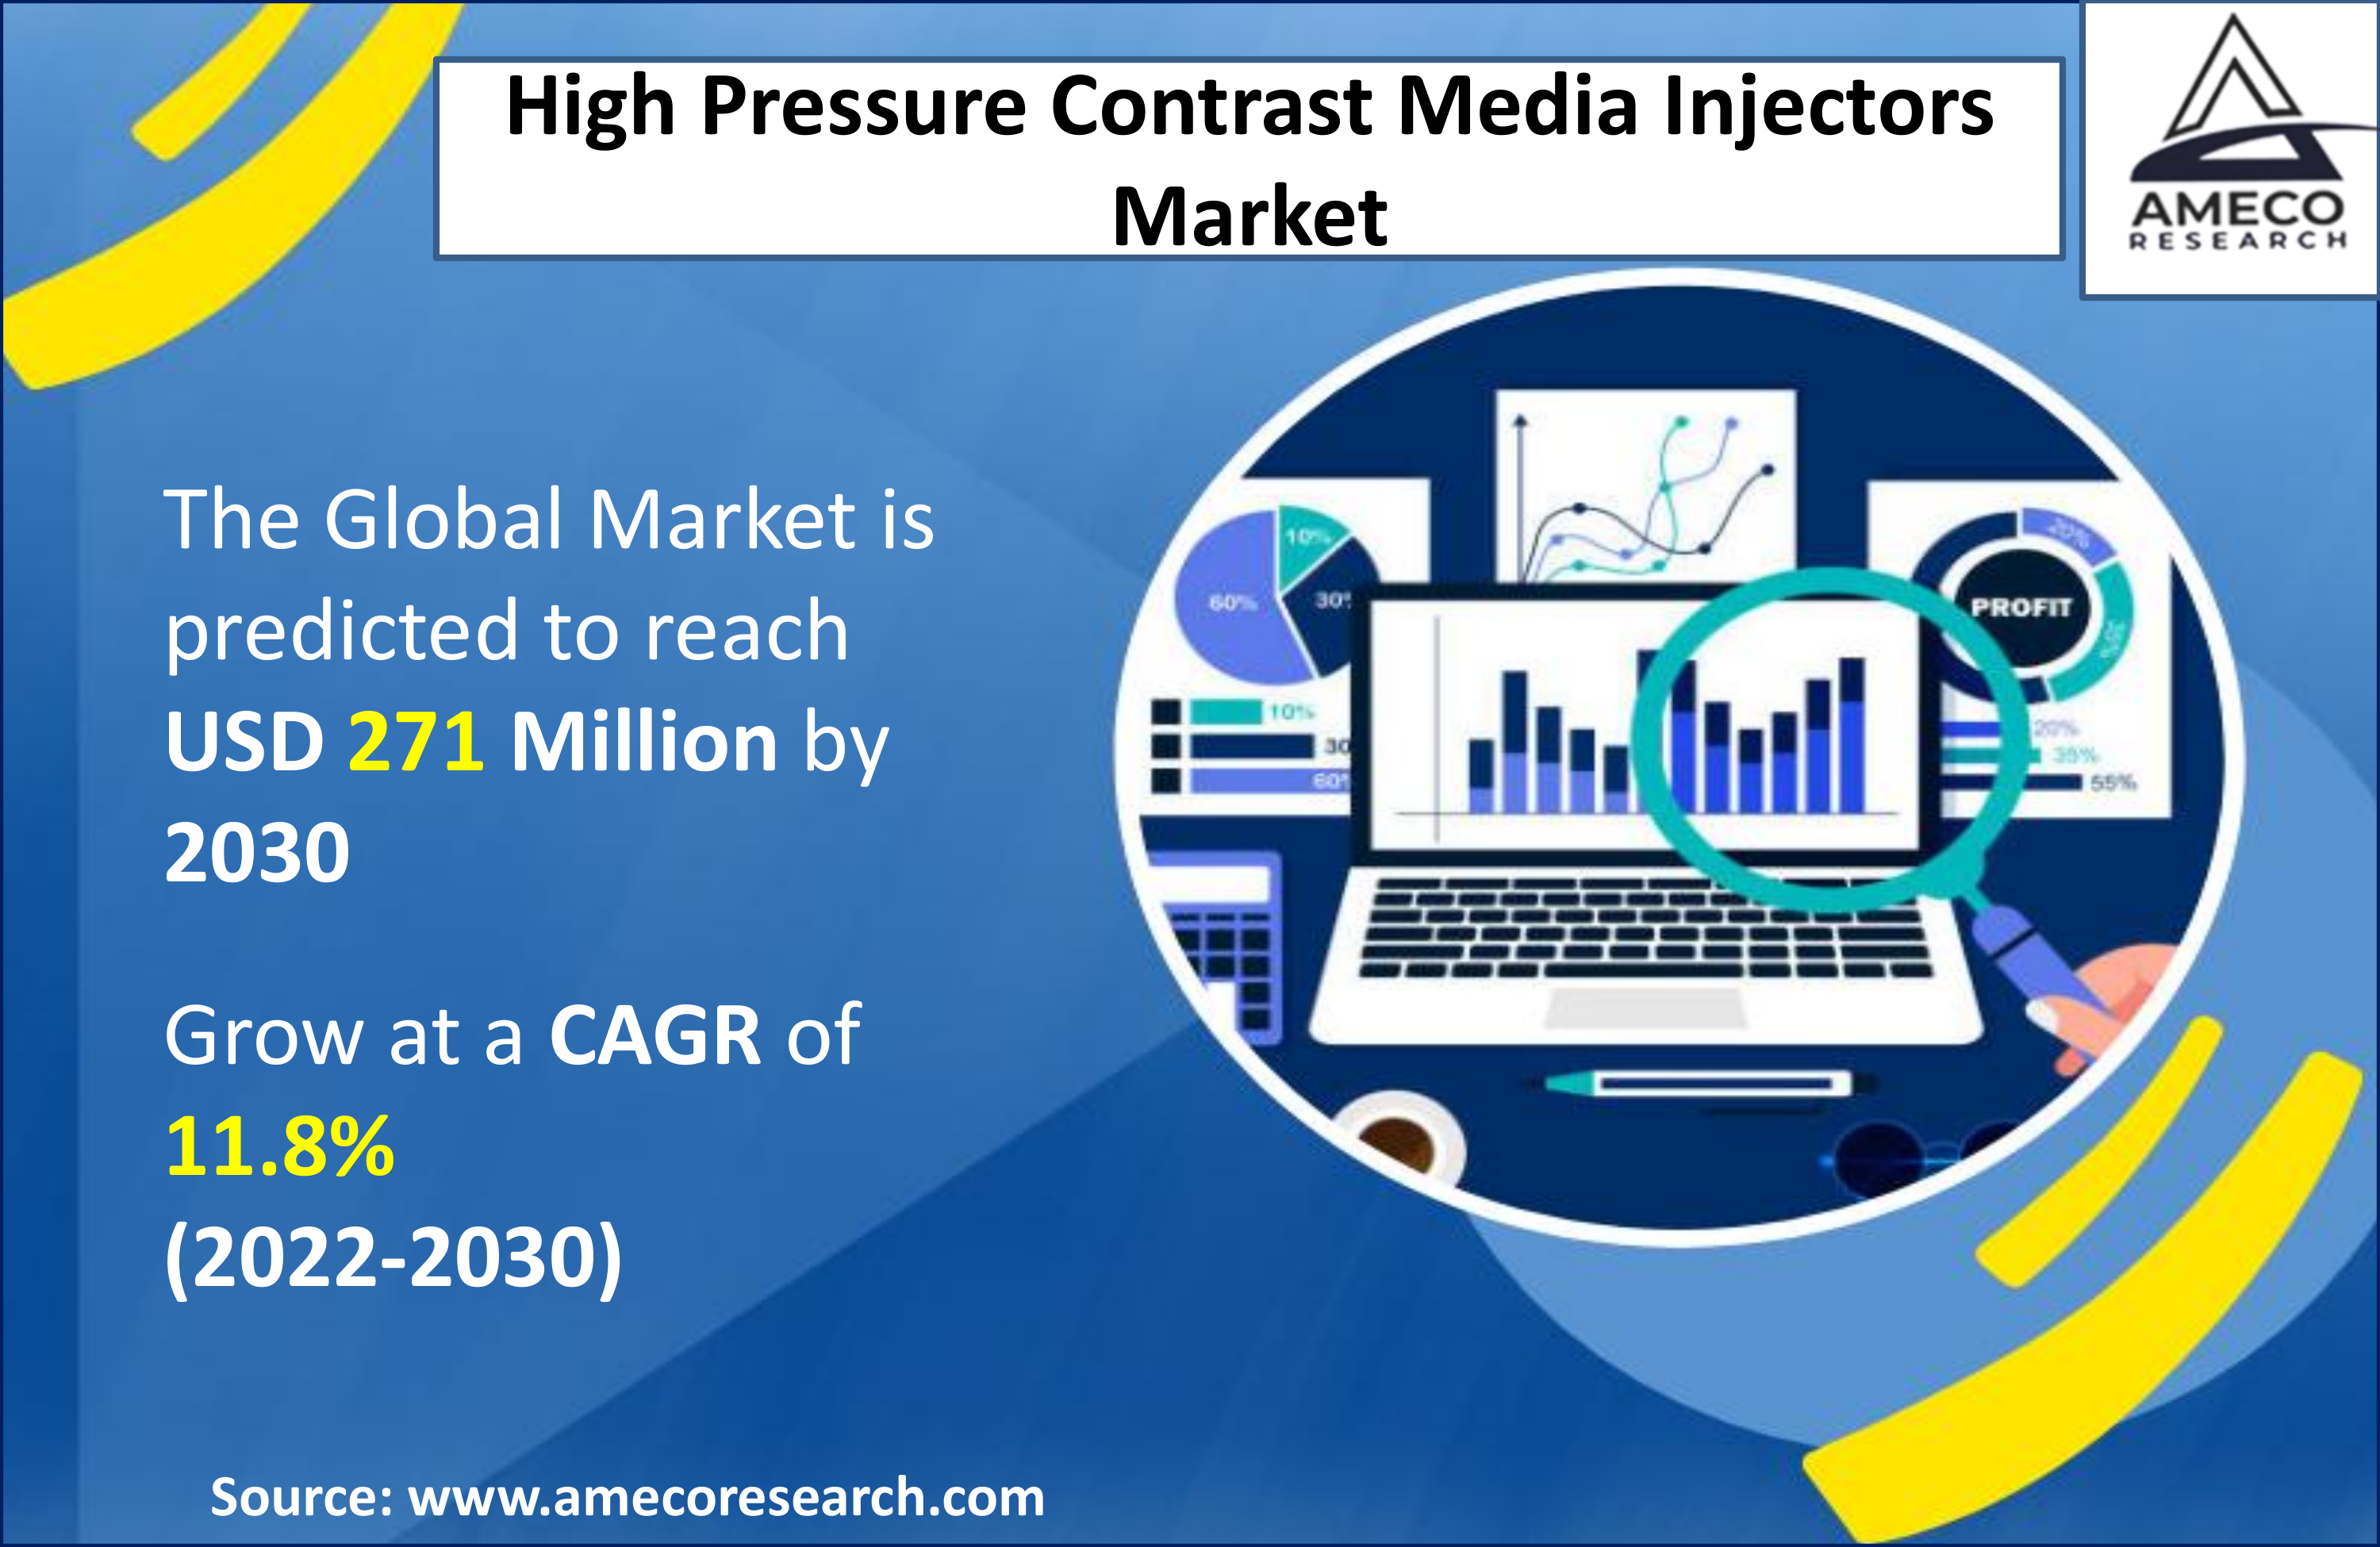 High Pressure Contrast Media Injectors (HPCMI) Market